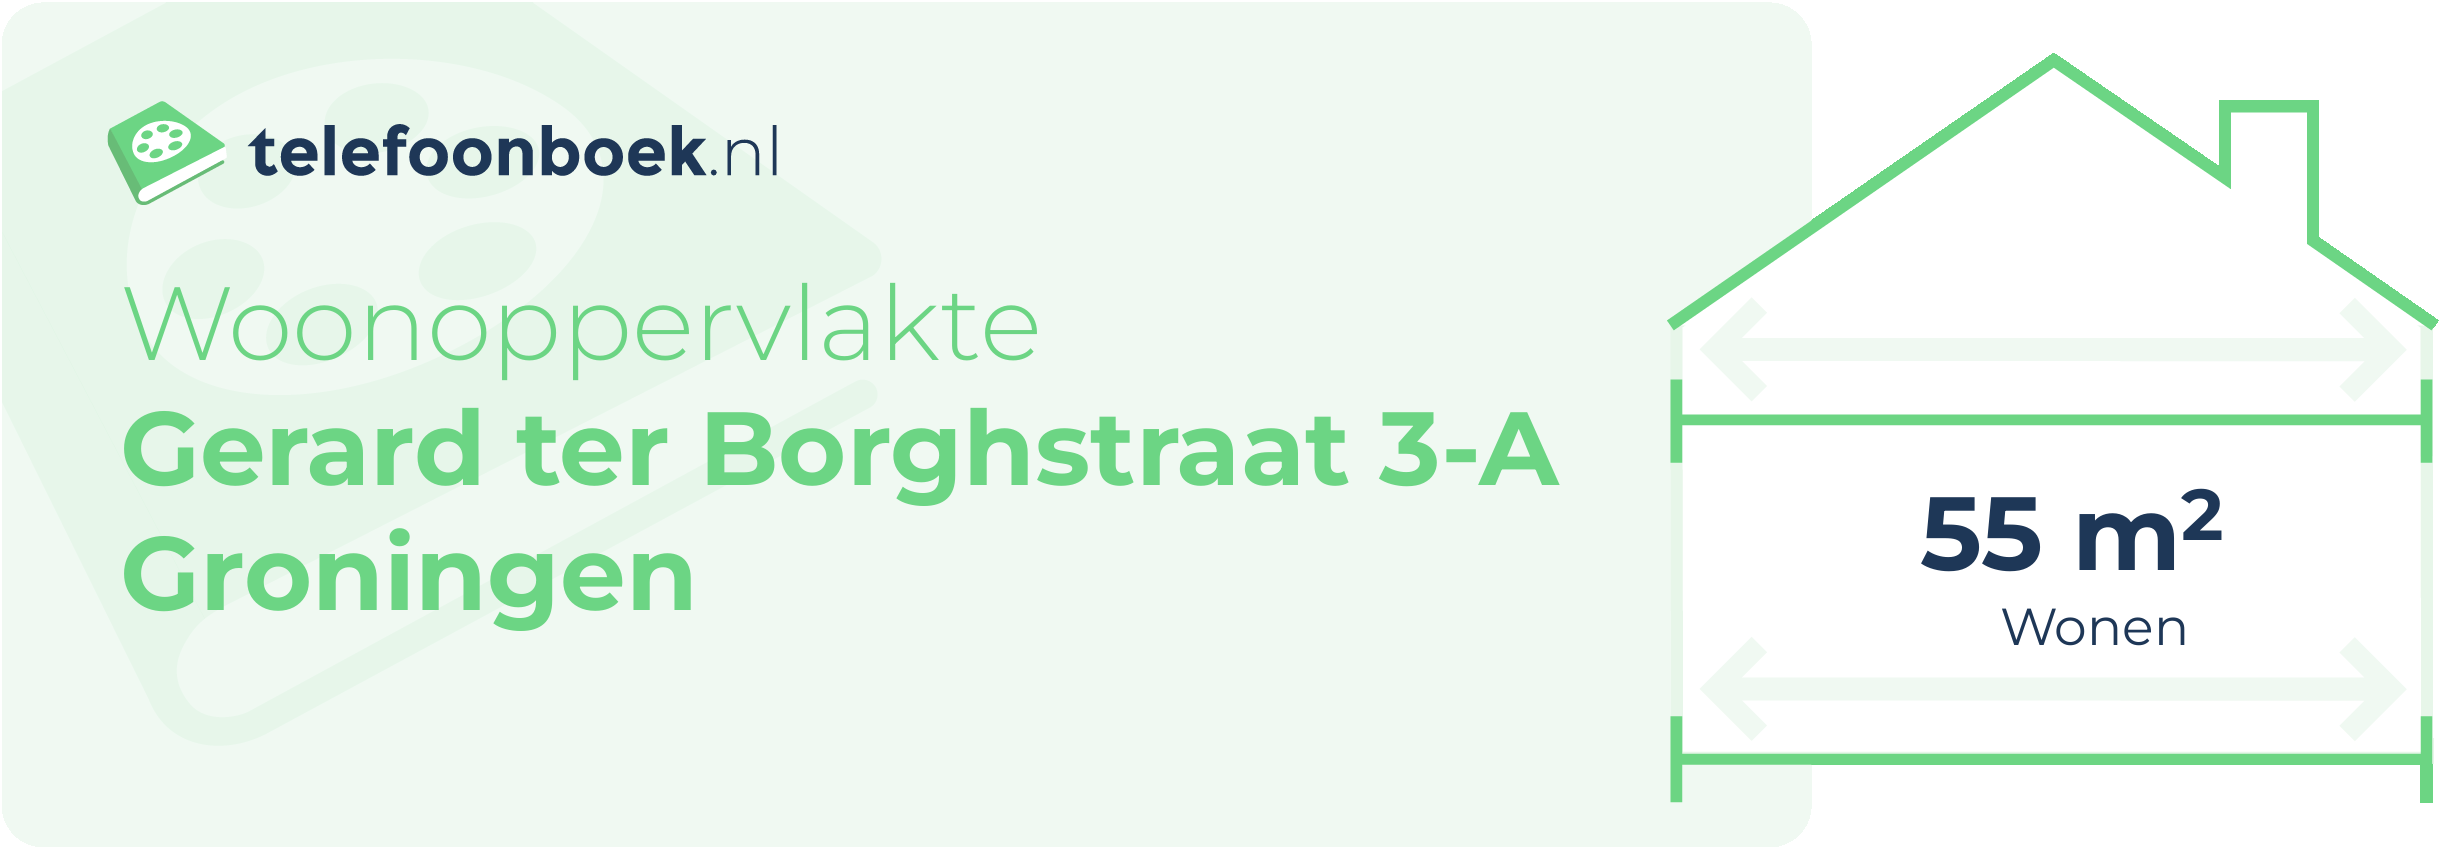 Woonoppervlakte Gerard Ter Borghstraat 3-A Groningen